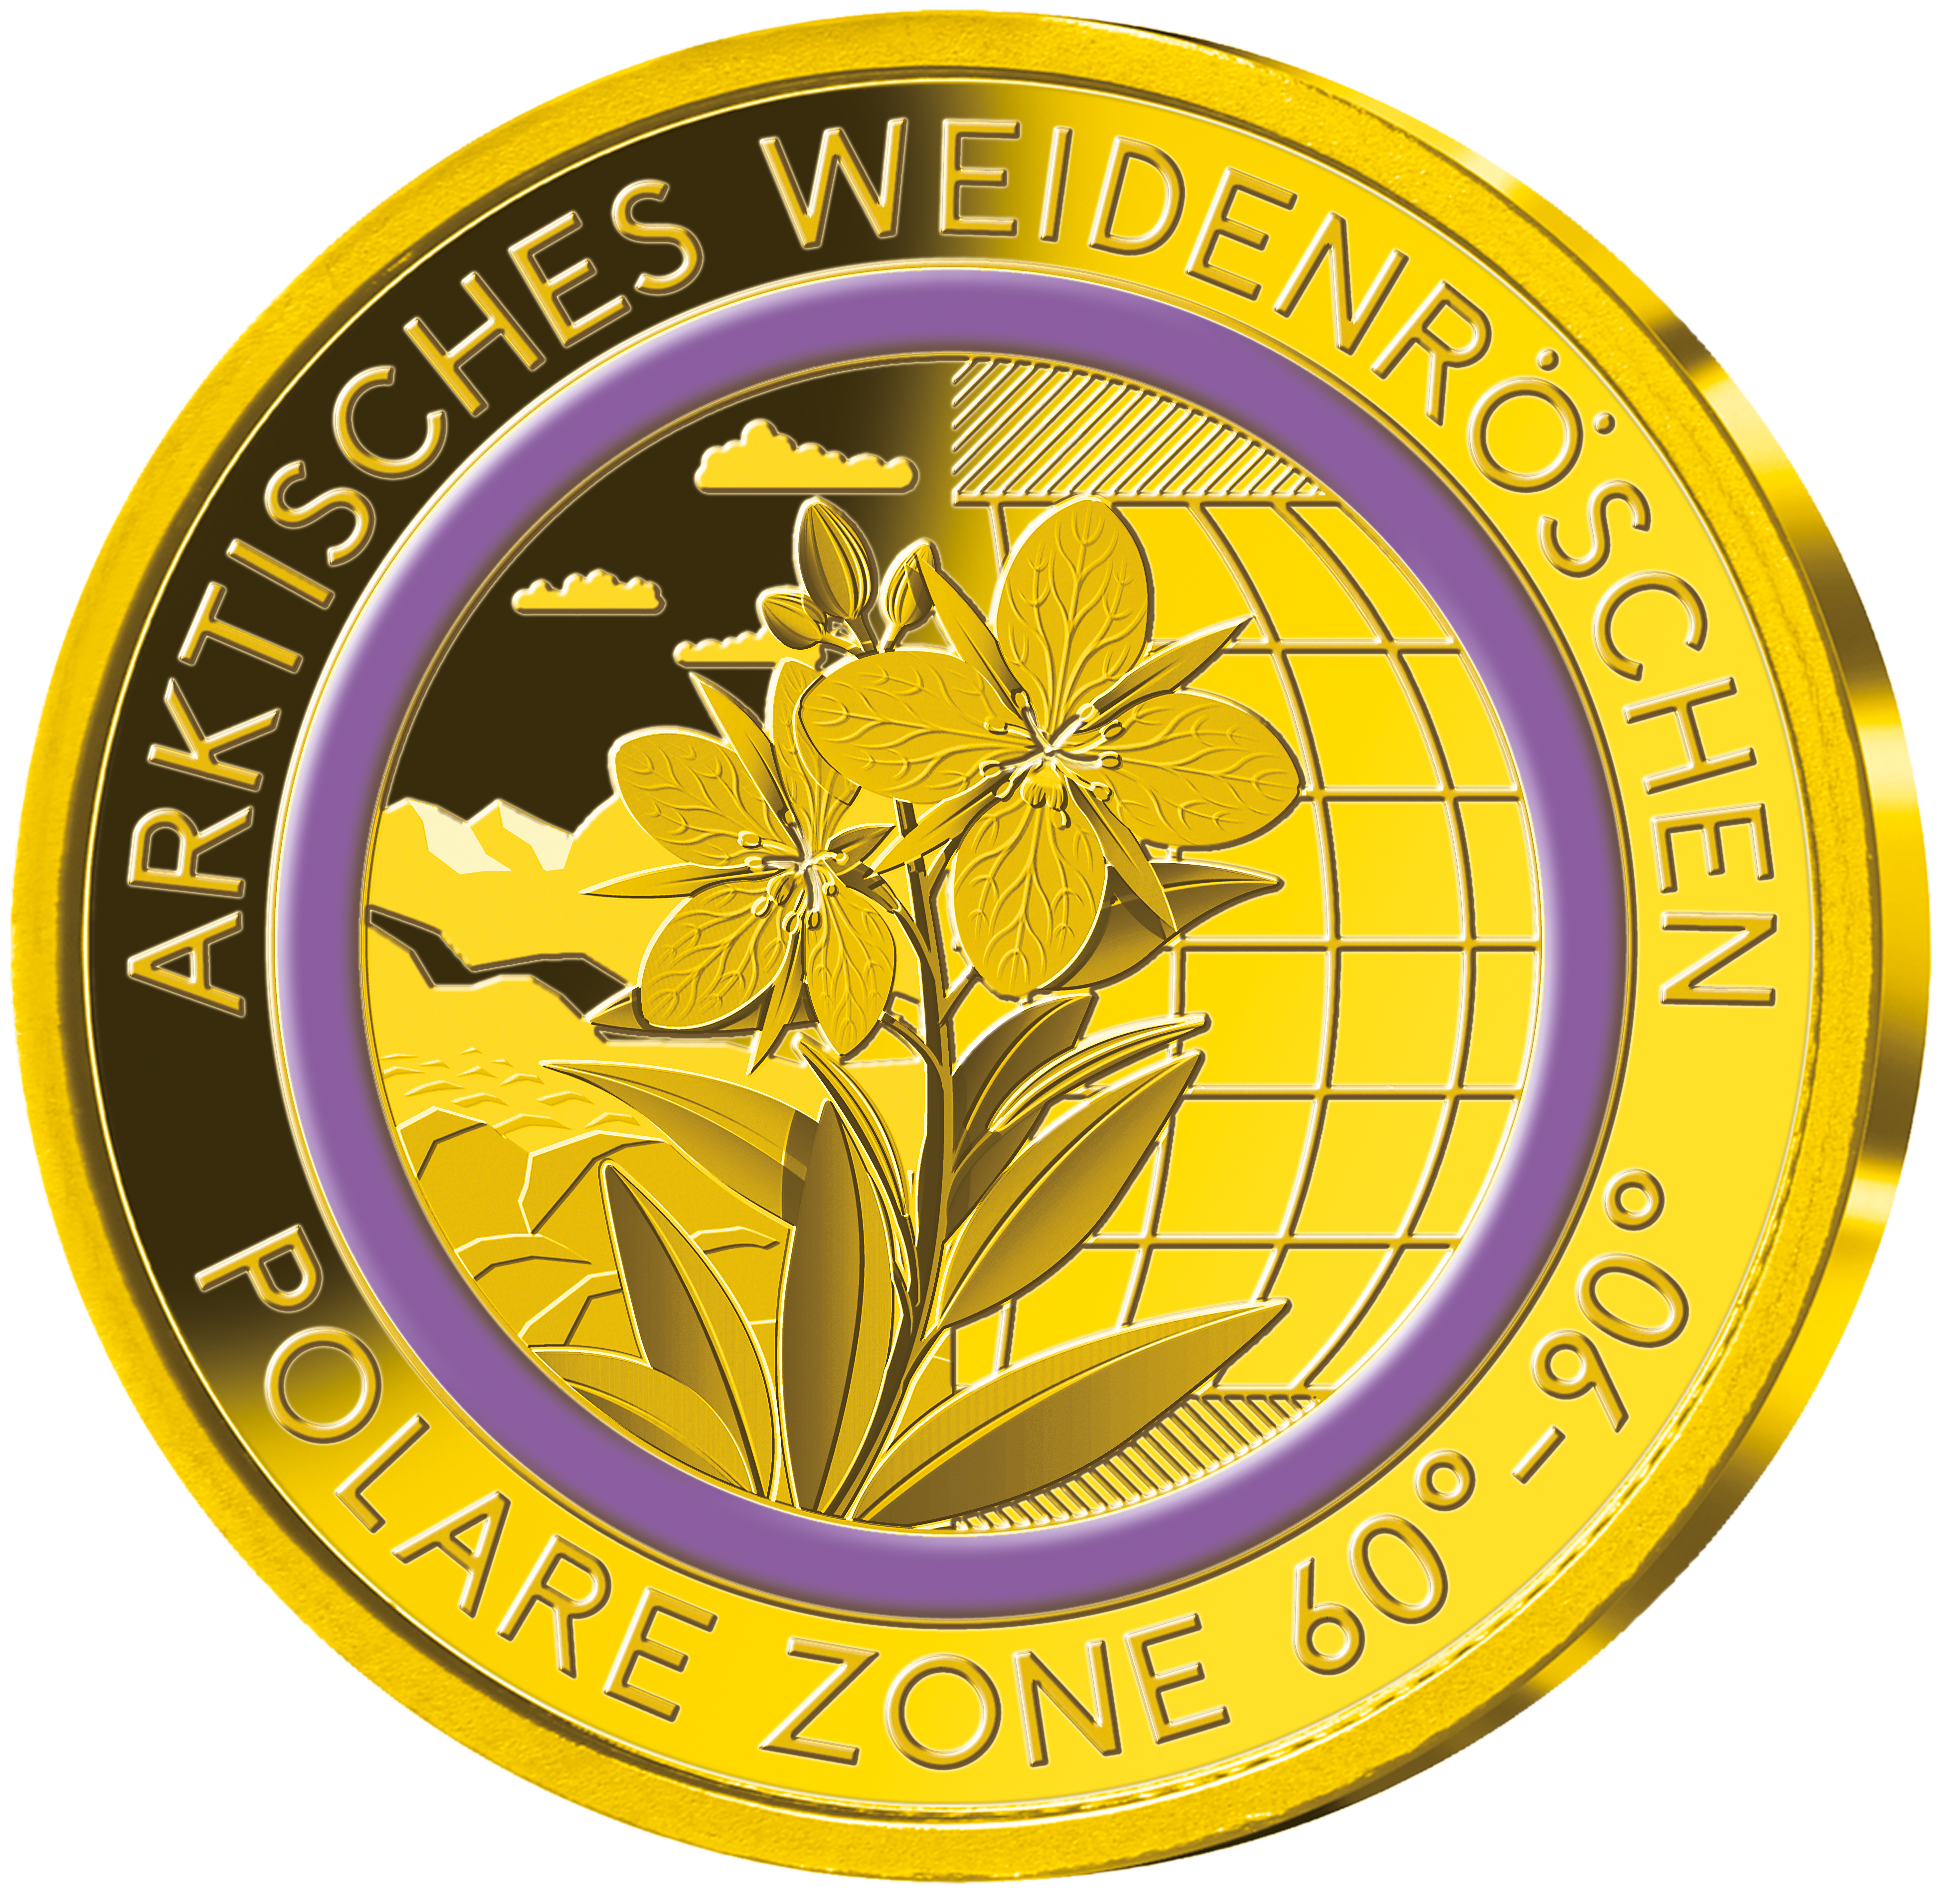 Die Gold-Gedenkprägung „Arktisches Weidenröschen – polare Zone“ mit violettem Farbring